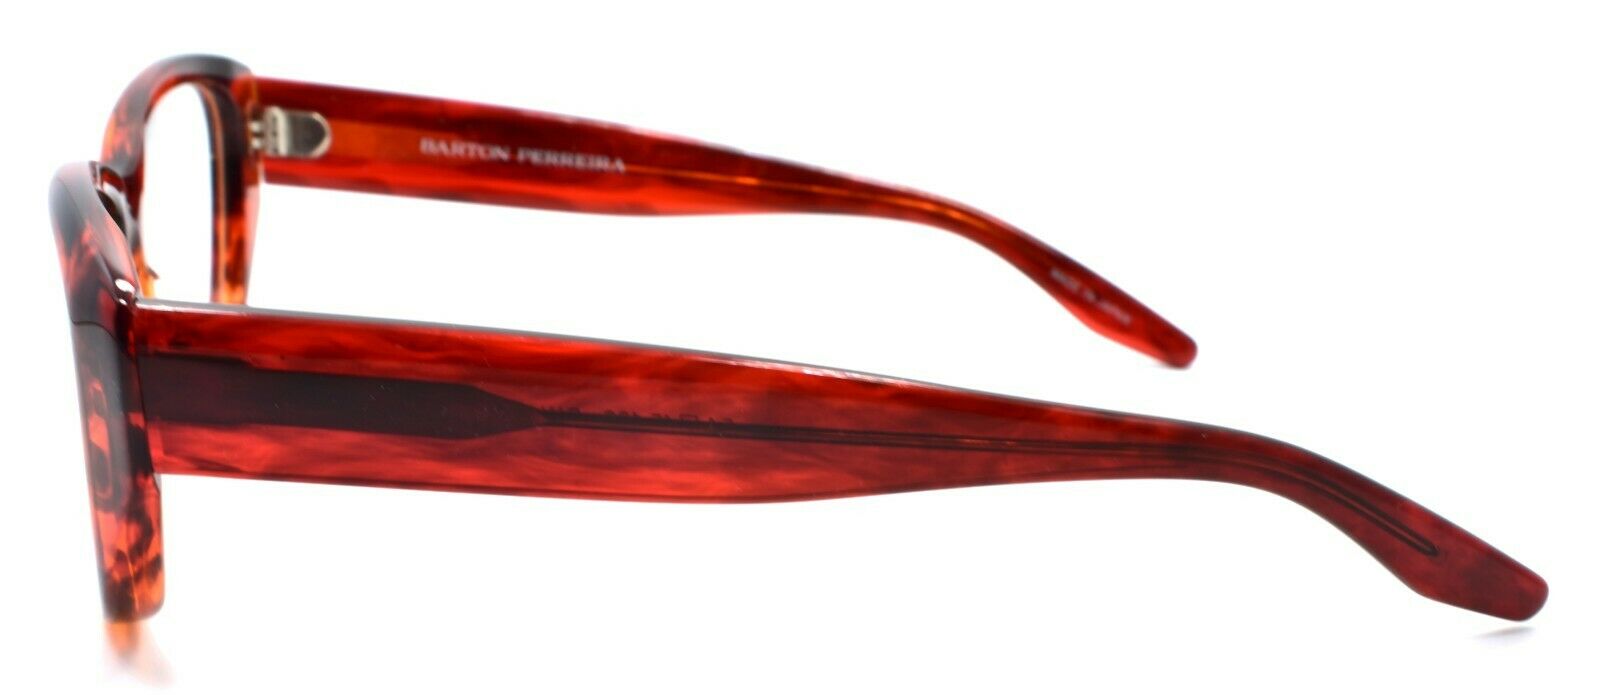 3-Barton Perreira Sexton PIN Women's Eyeglasses Frames 54-15-138 Pinot Dark Red-672263039419-IKSpecs